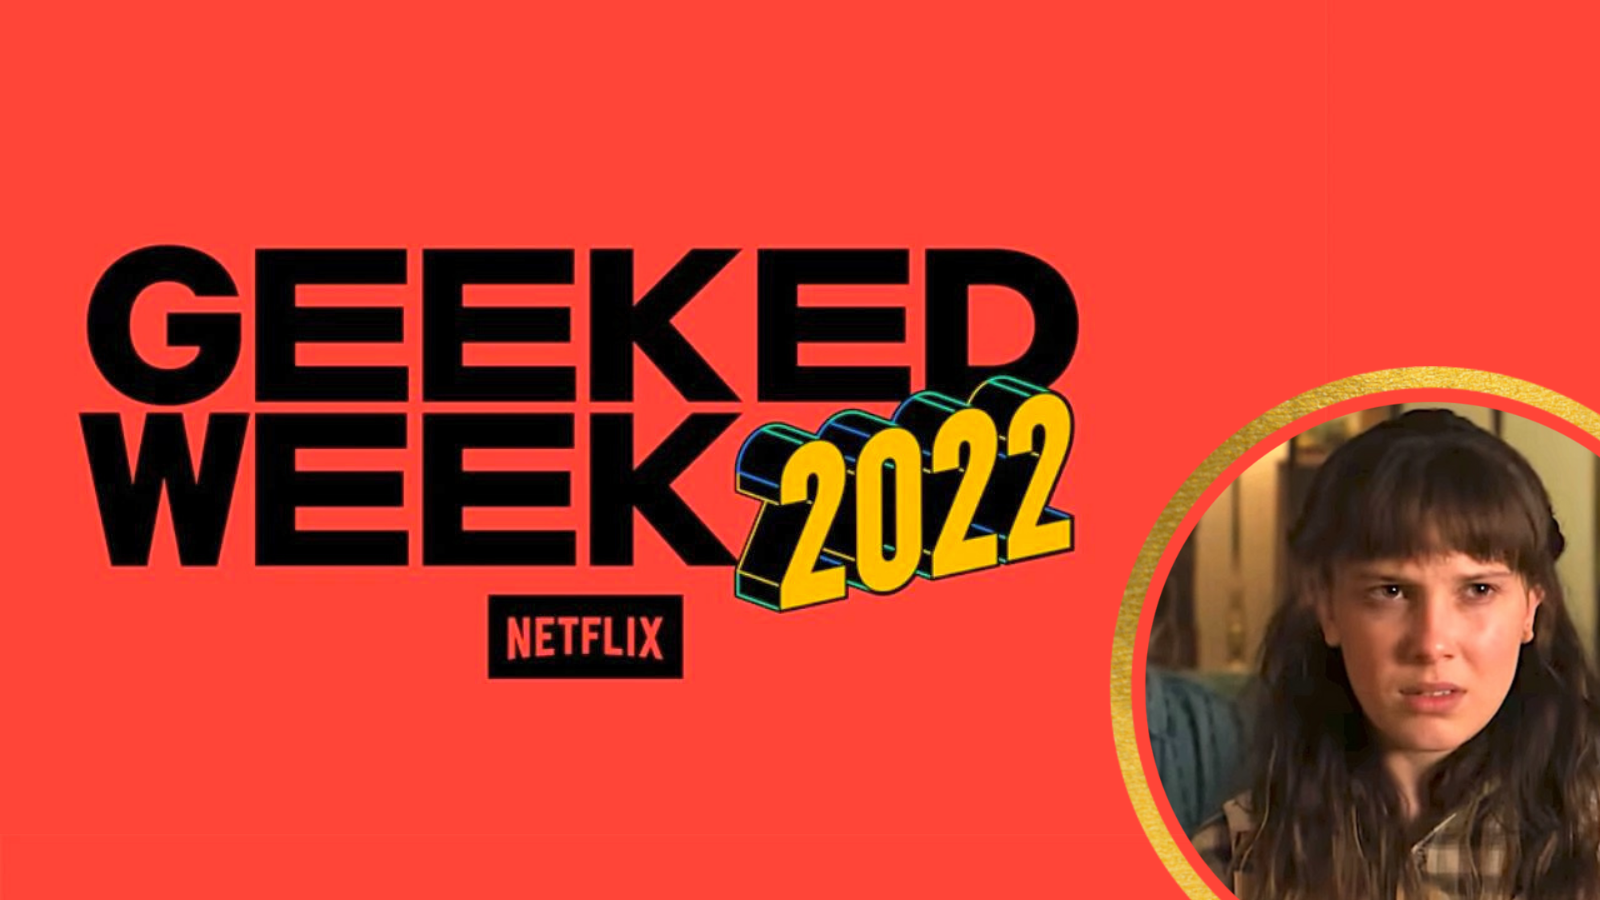 Geeked Week Netflix